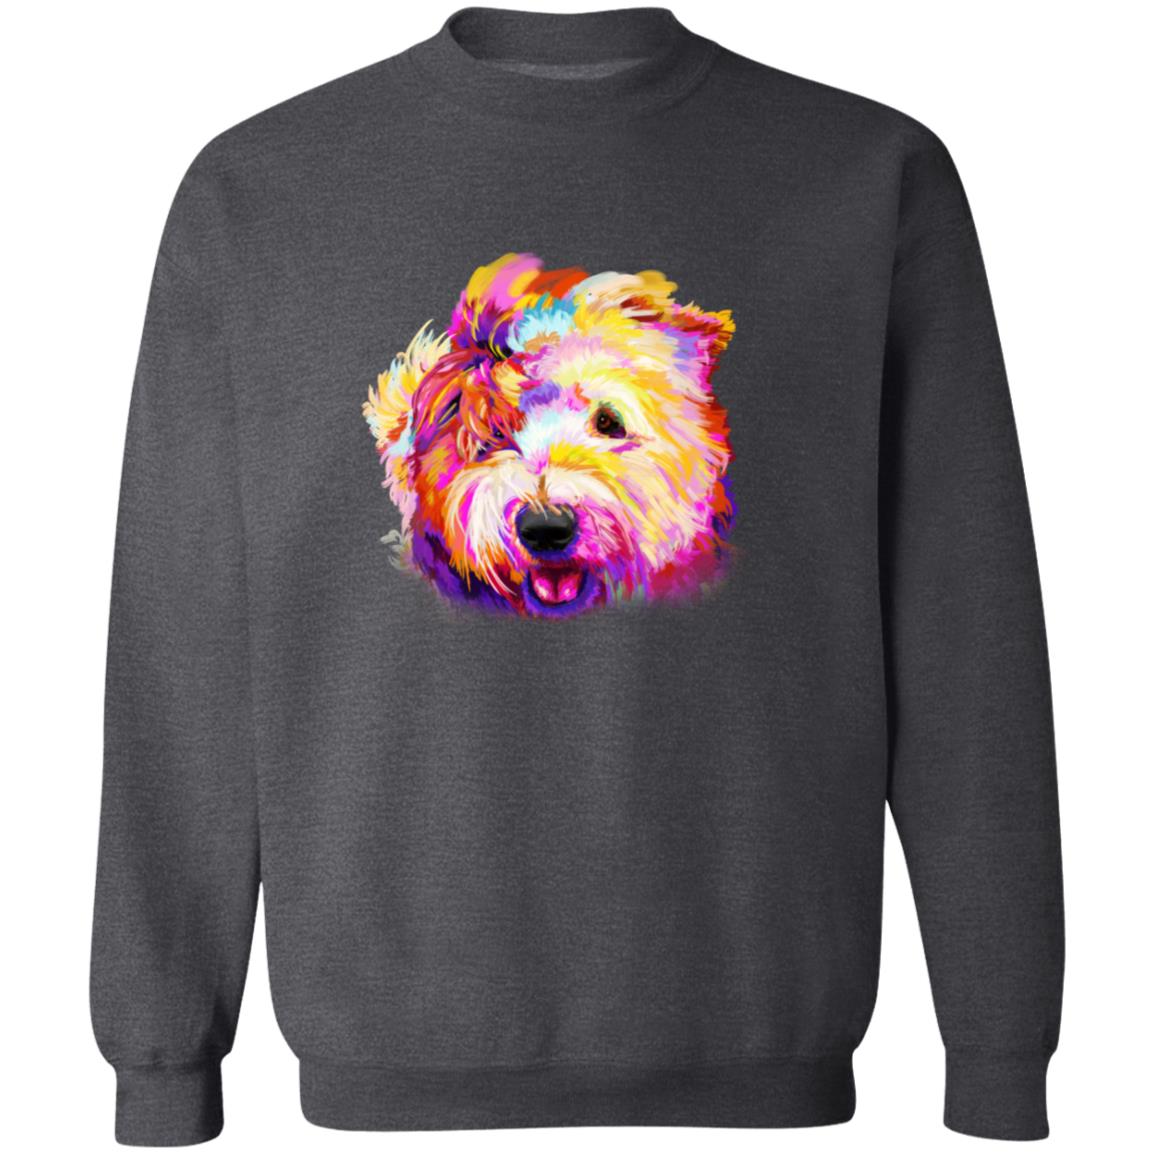 Old english sheepdog dog Unisex Crewneck Sweatshirt with expressive splashes-Family-Gift-Planet